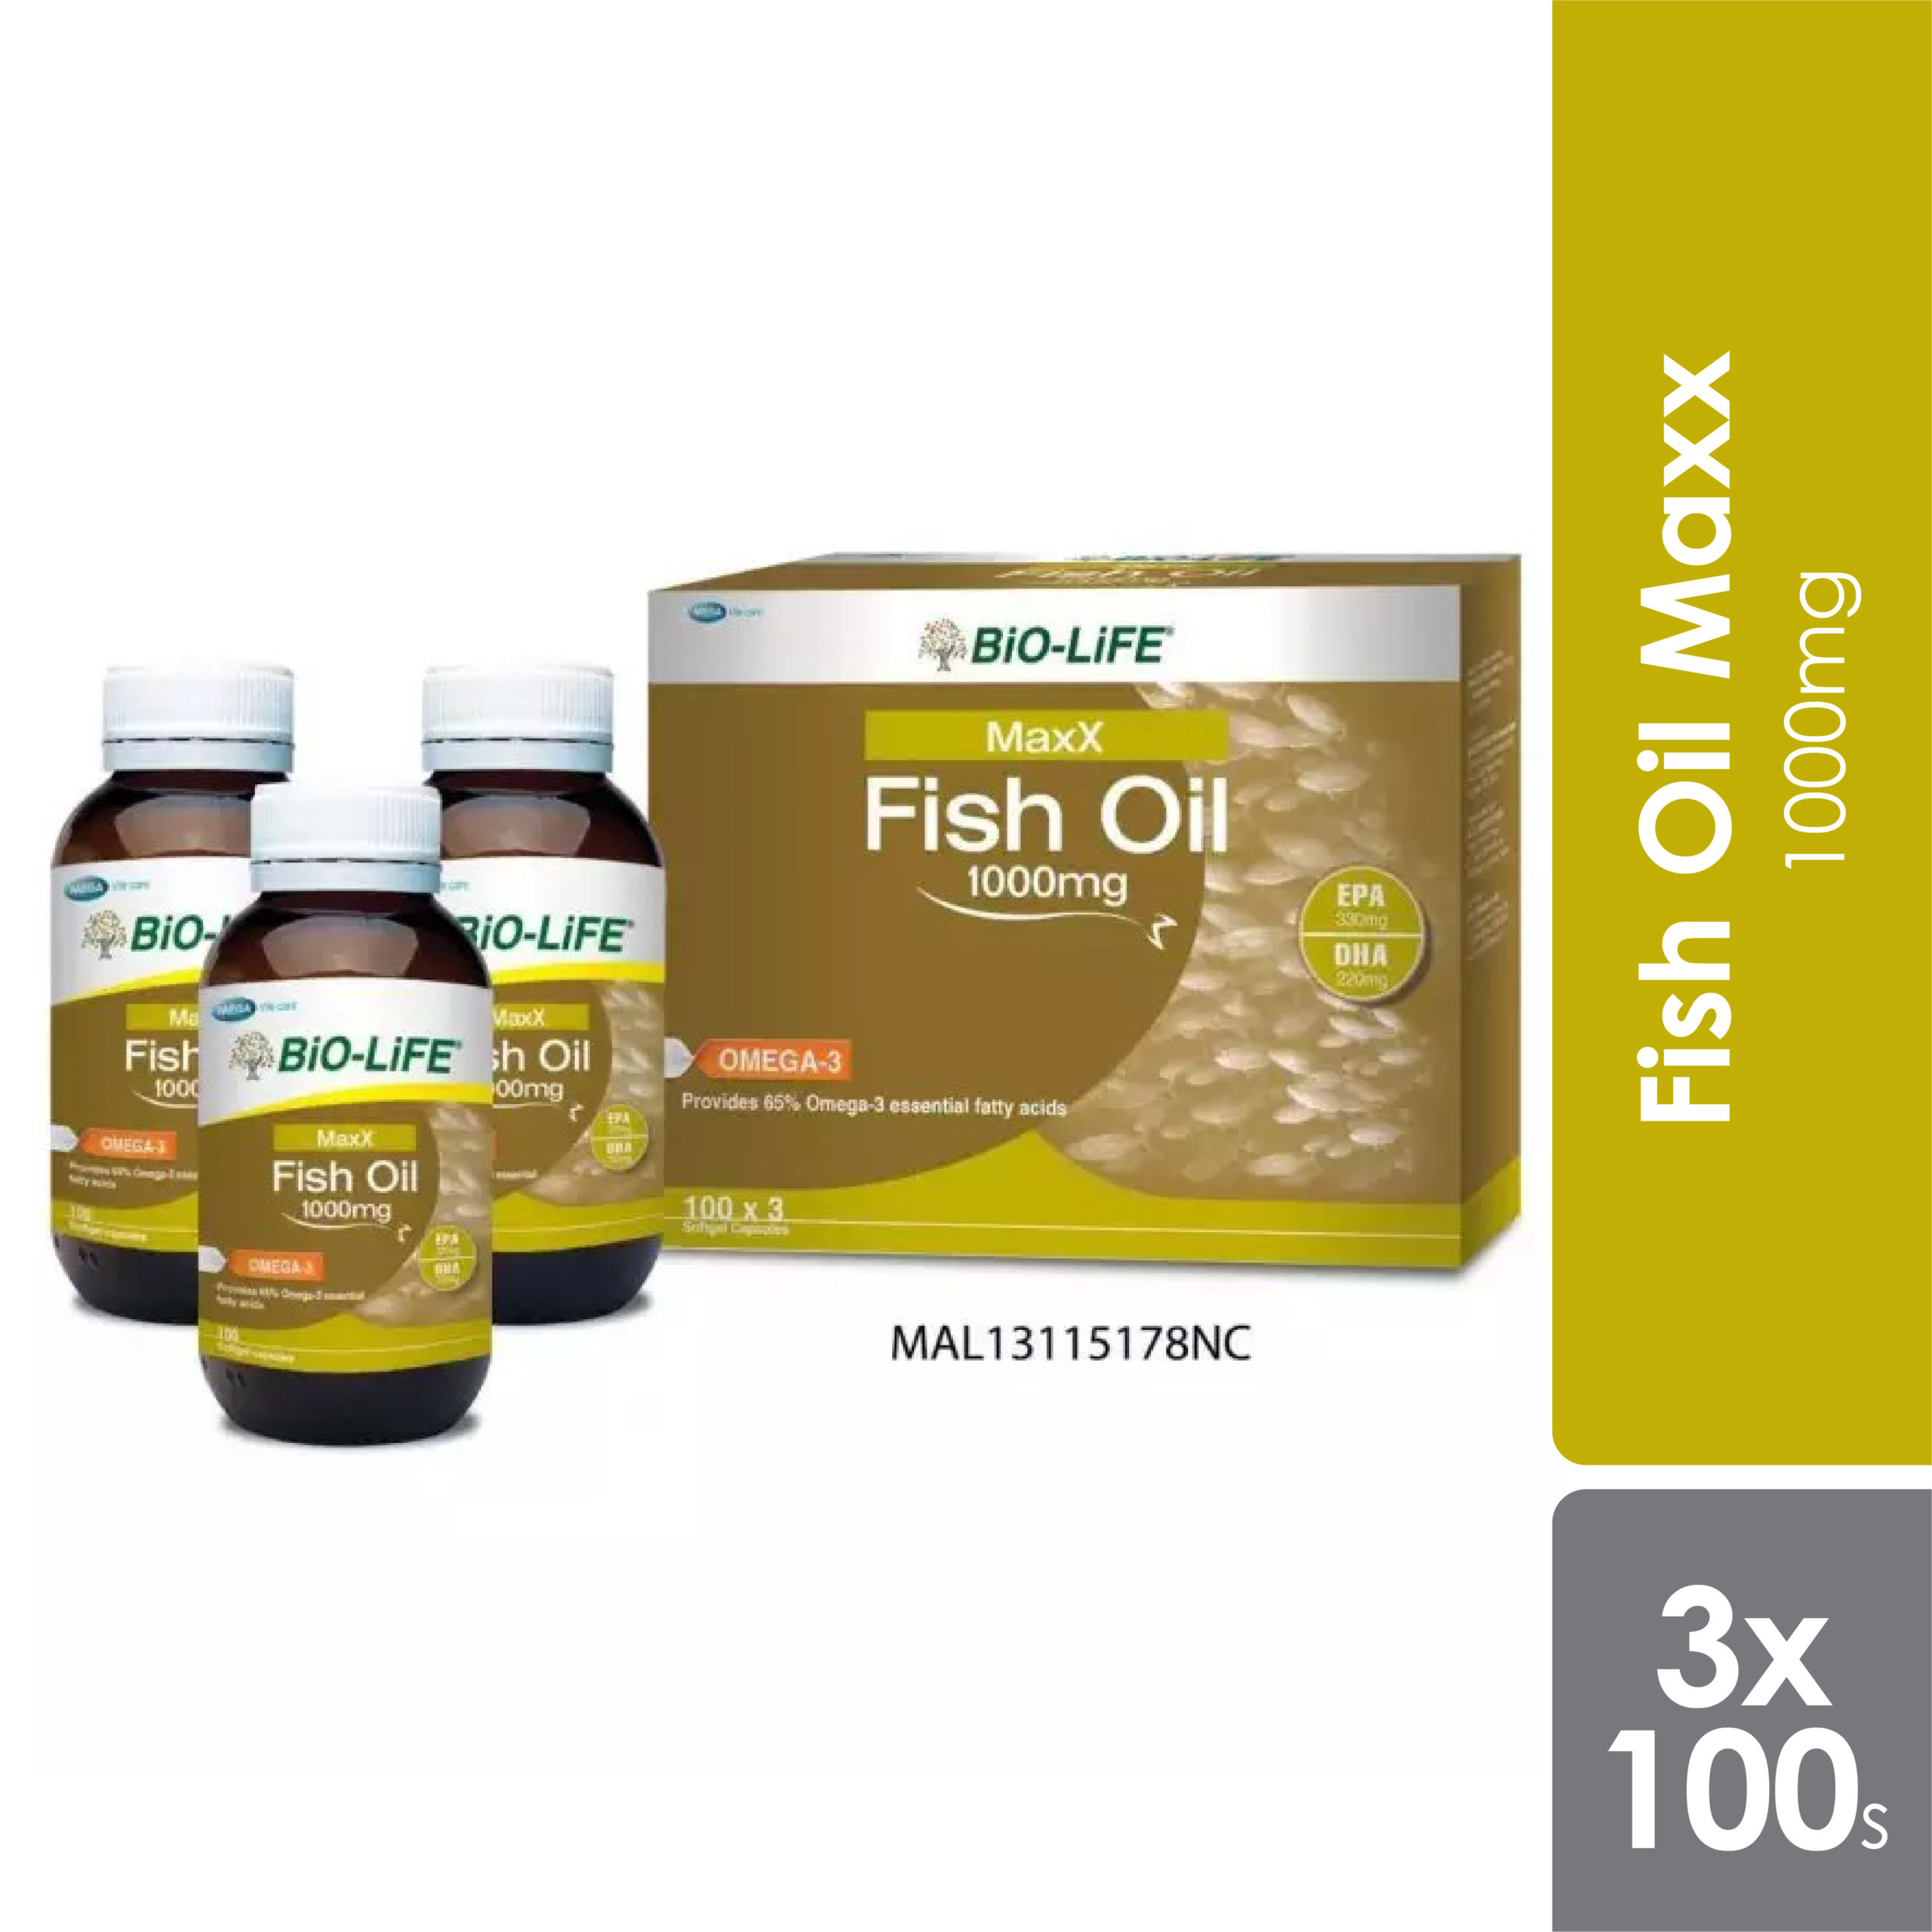 Bio-life Fish Oil Maxx 1000mg 3x100s - Alpro Pharmacy